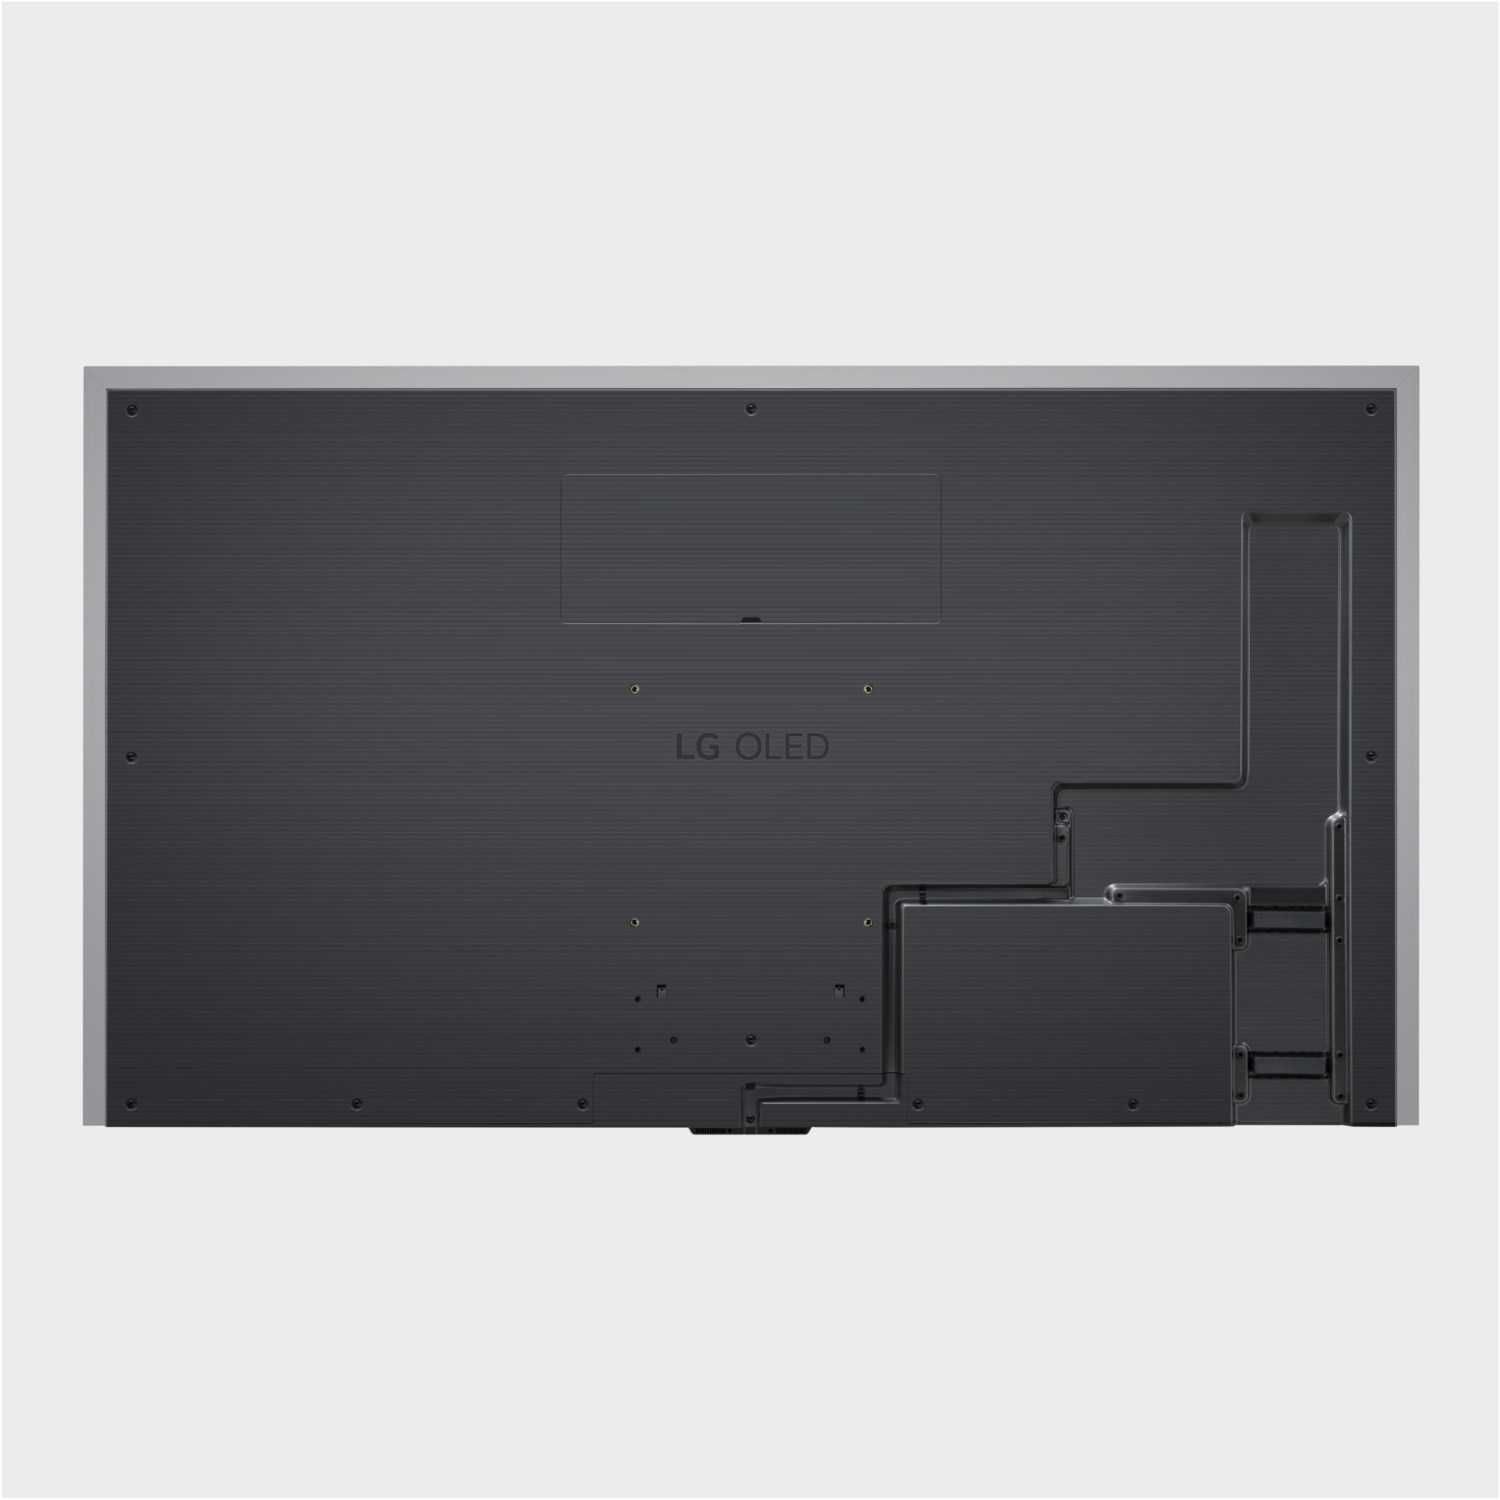 Телевізор LG Signature OLED Evo 97M3, 88M3, 77M3